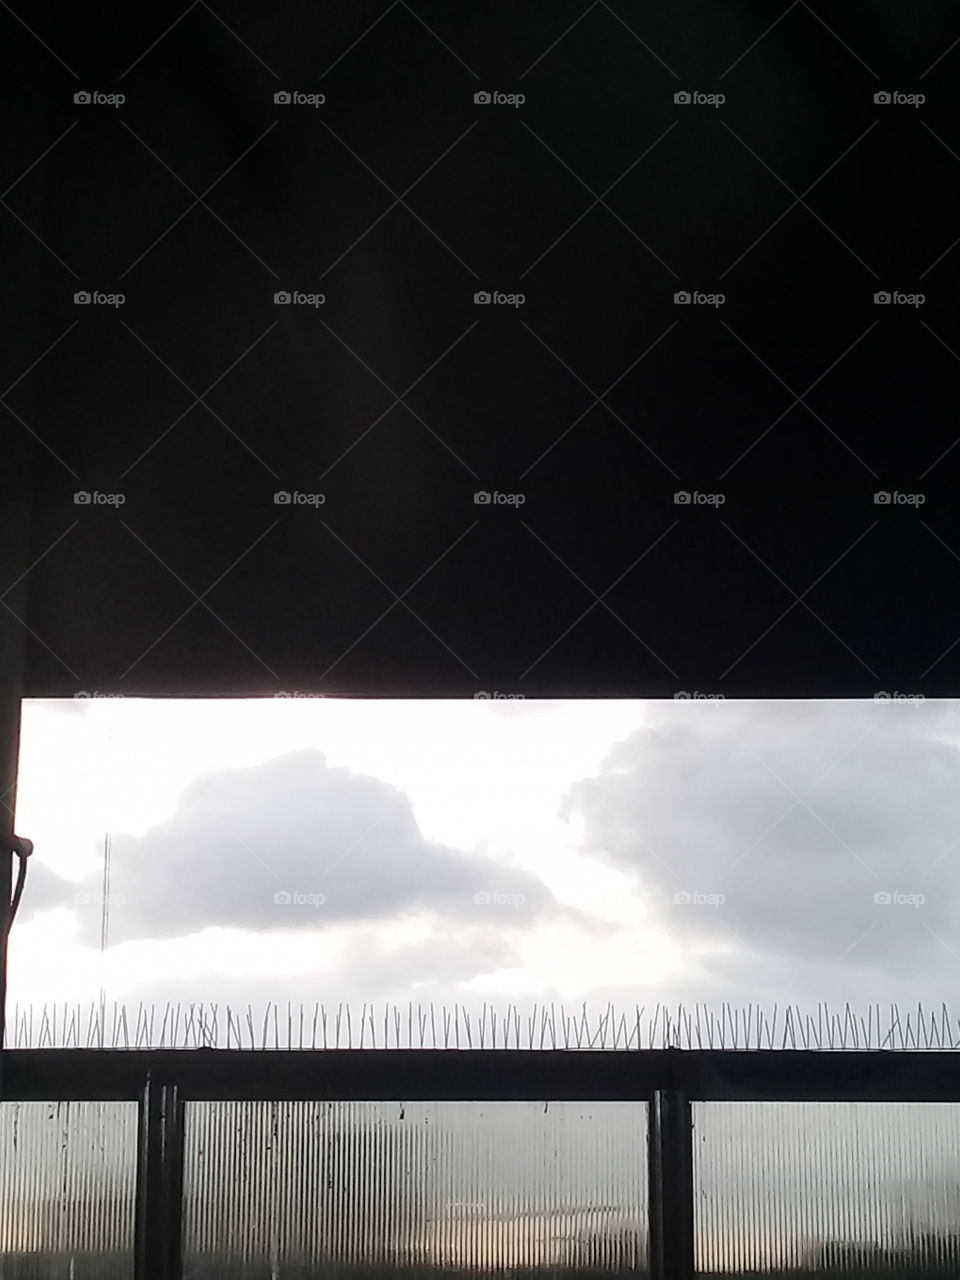 cielo tormentoso de verano sobre una ciudad.  Fotografía tomada desde la ventana de un punto alto en la estación de tren de Moreno, provincia de Buenos Aires.  Argentina